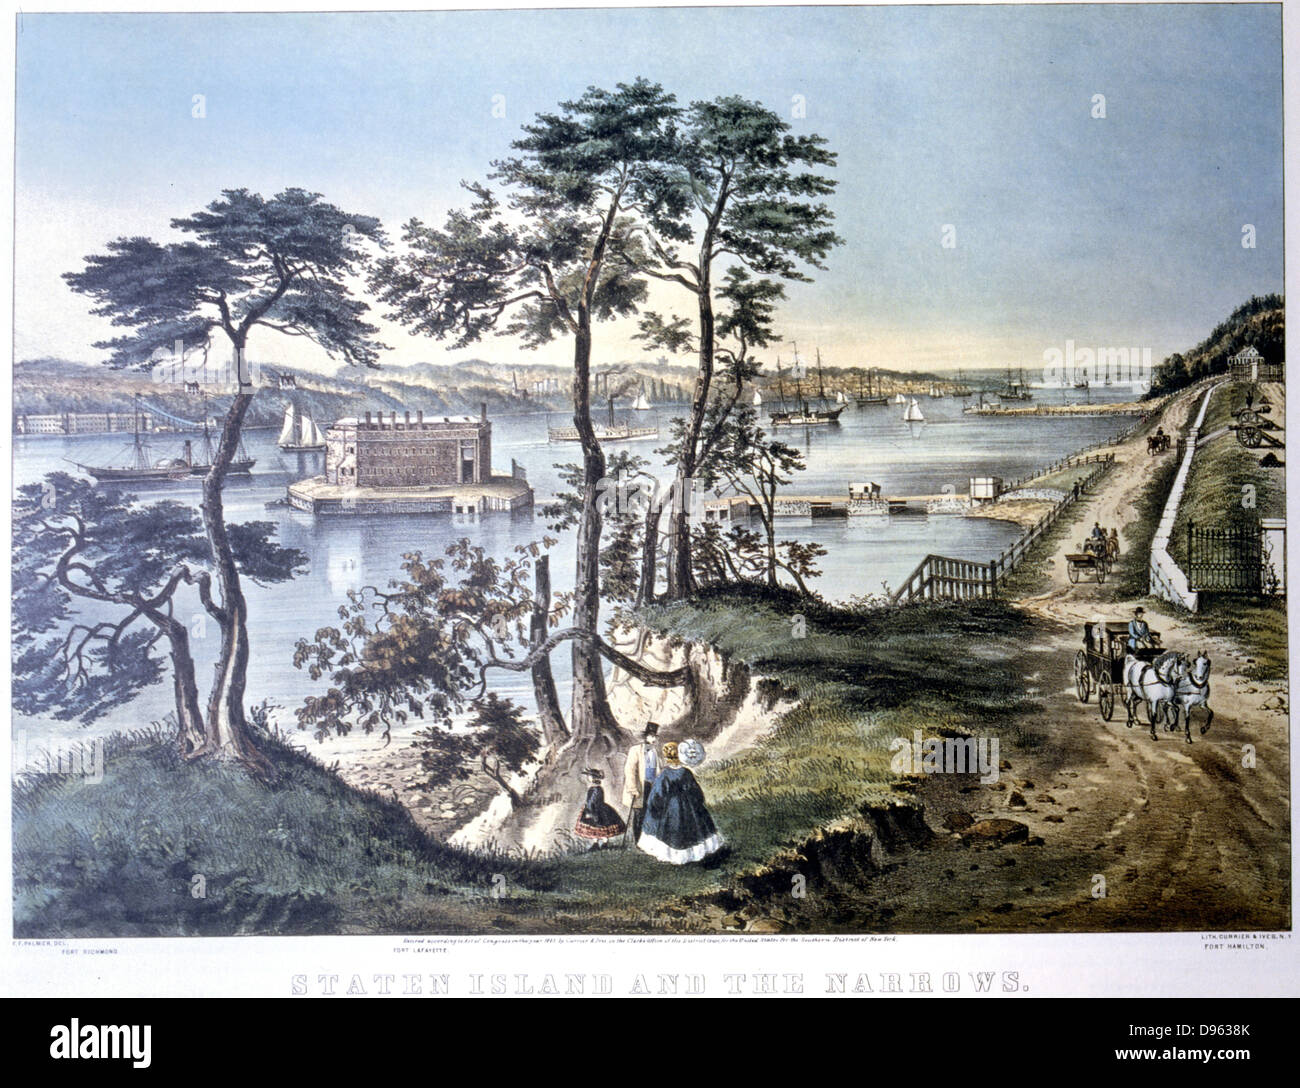 Staten Island und die Narrows New York gesehen von Fort Hamilton. Fort Layfayette Zentrum von Bäumen eingerahmt. Von Currier und Ives, New York, c 1870 Lithographie. Stockfoto